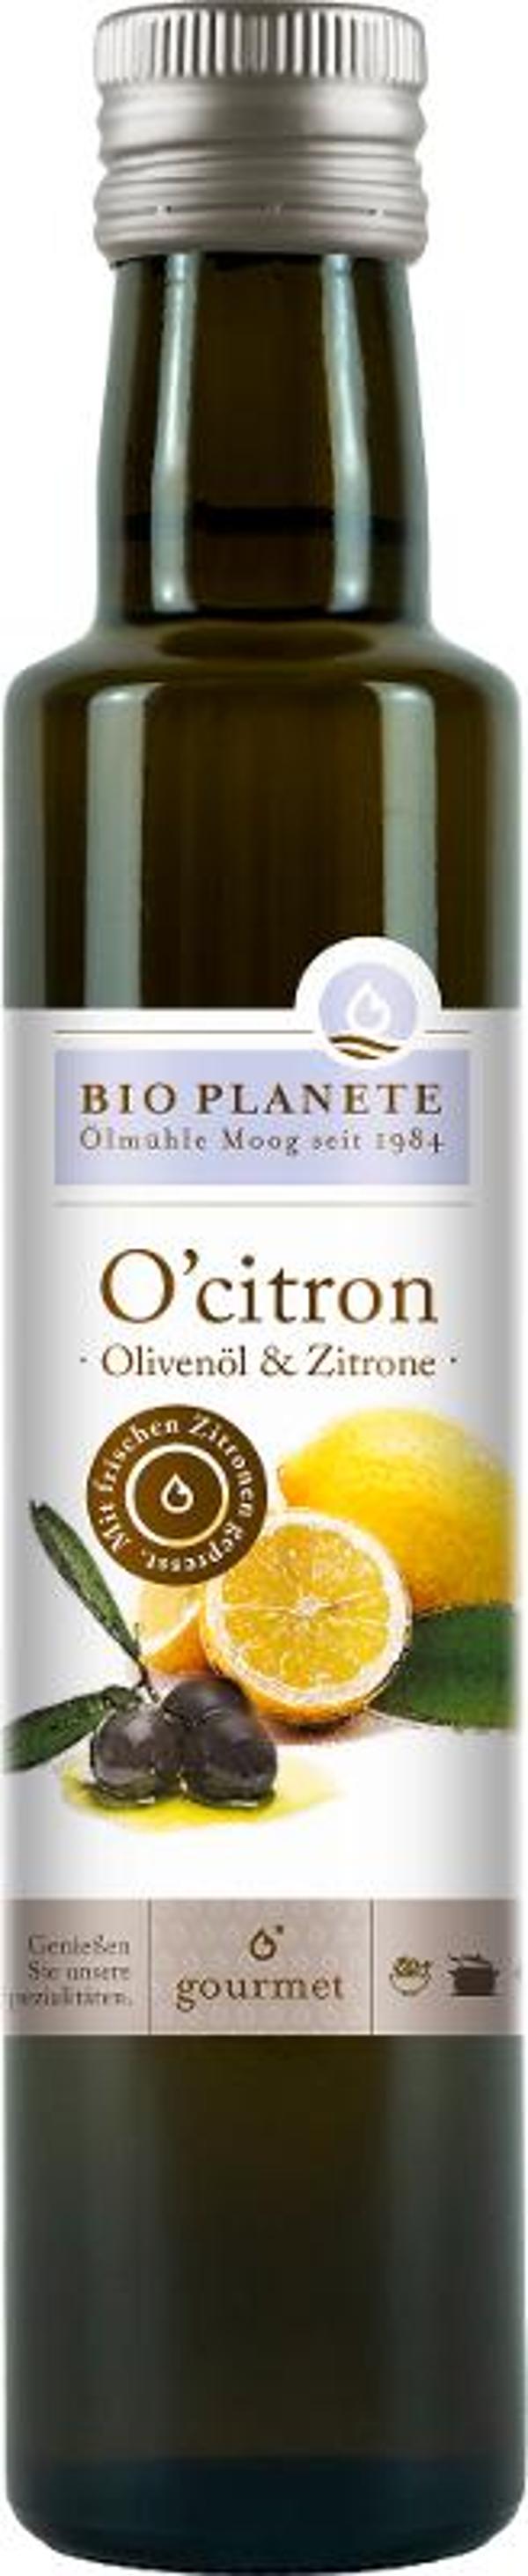 Produktfoto zu O'Citron Olivenöl mit Zitrone 250ml